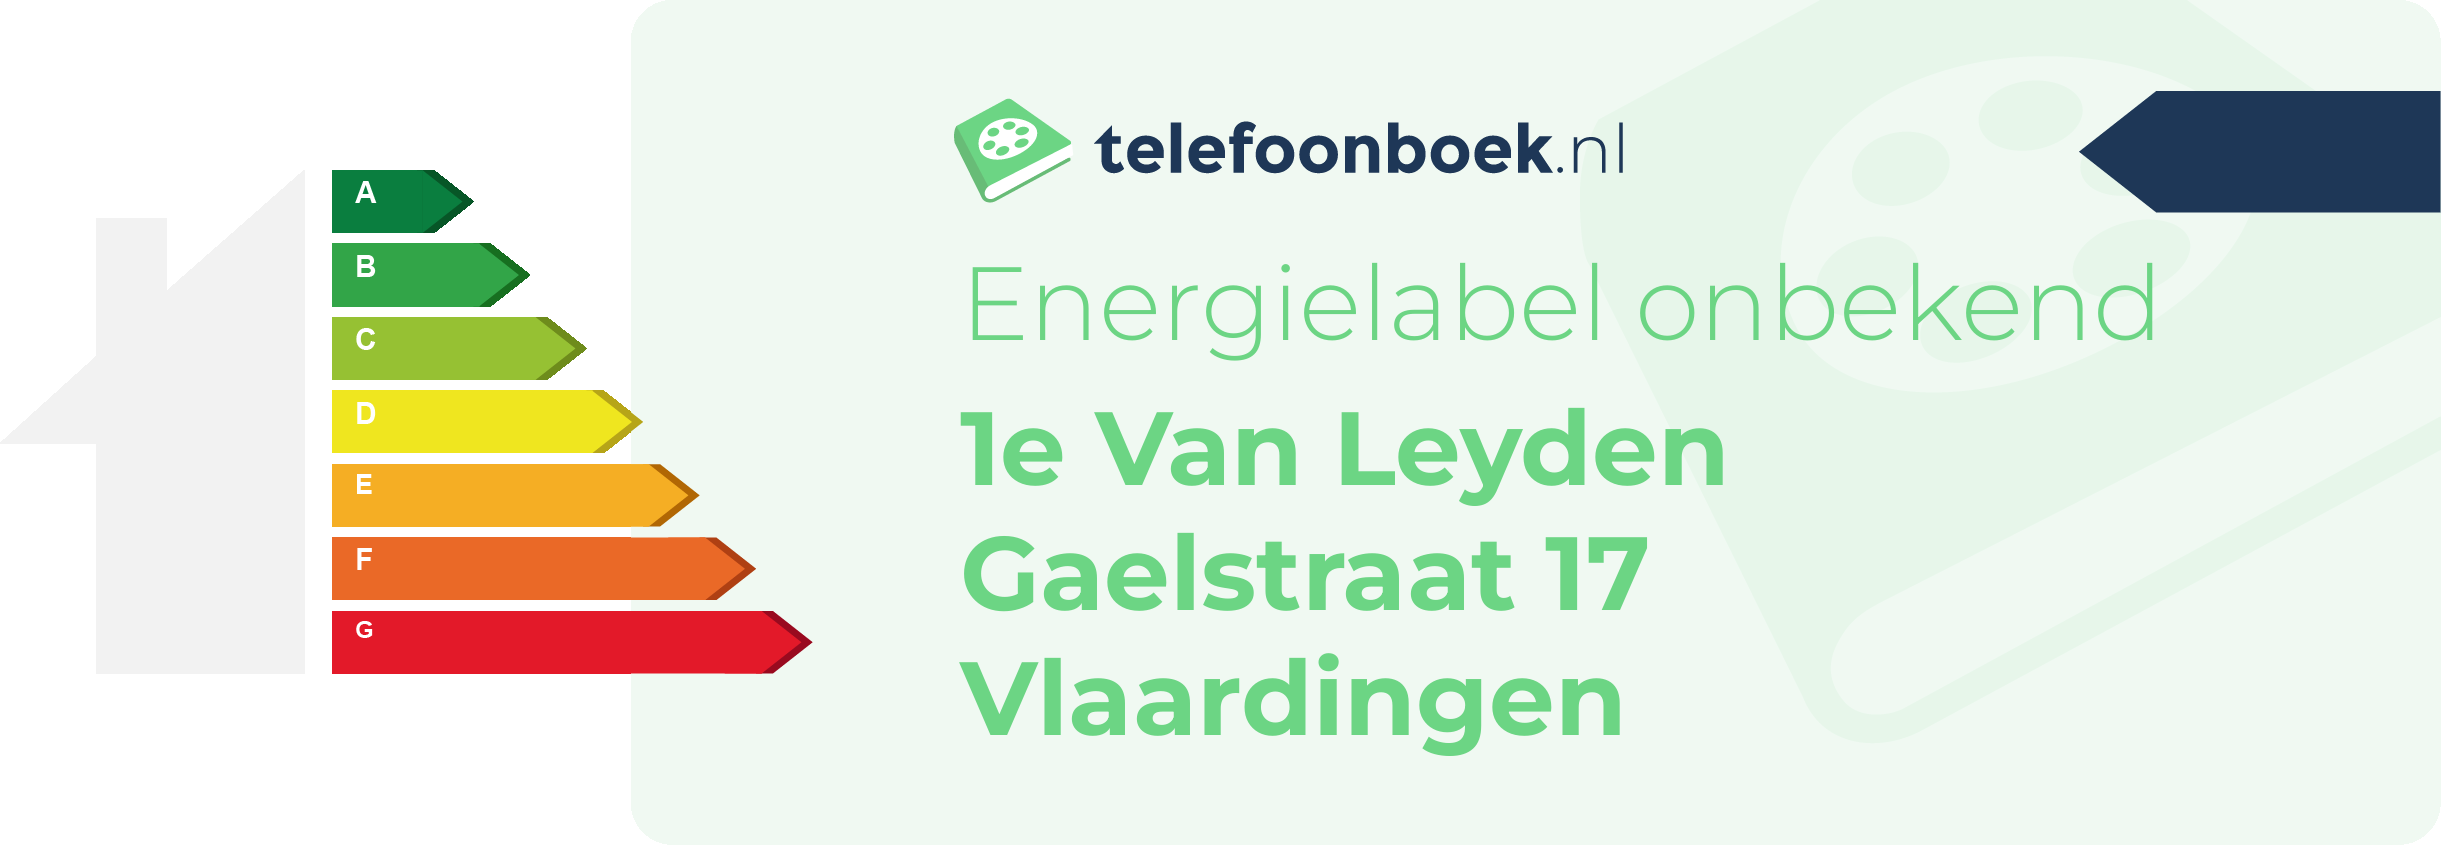 Energielabel 1e Van Leyden Gaelstraat 17 Vlaardingen